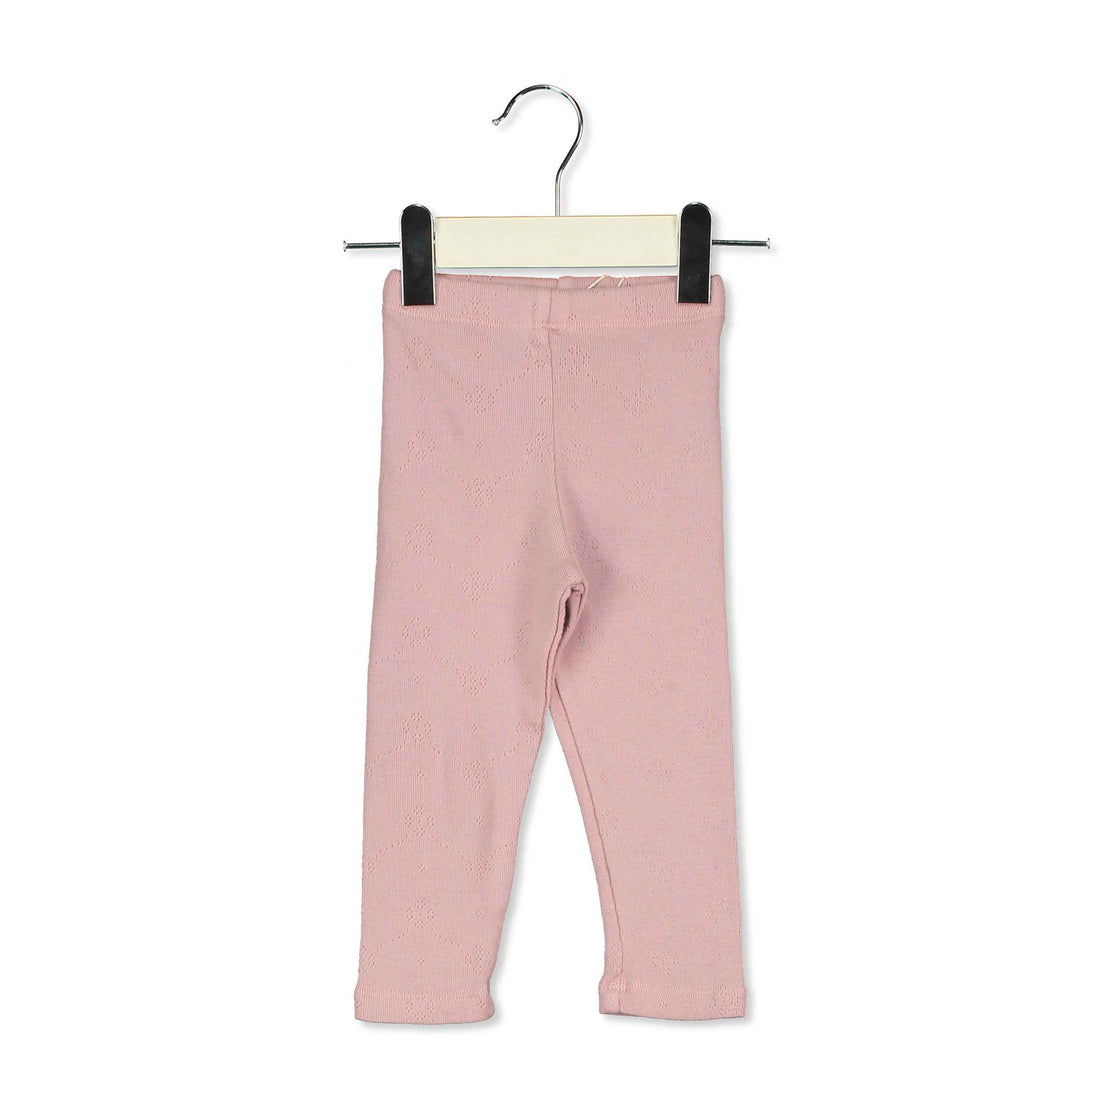 LotieKids Pink Solid Baby Textured Leggings